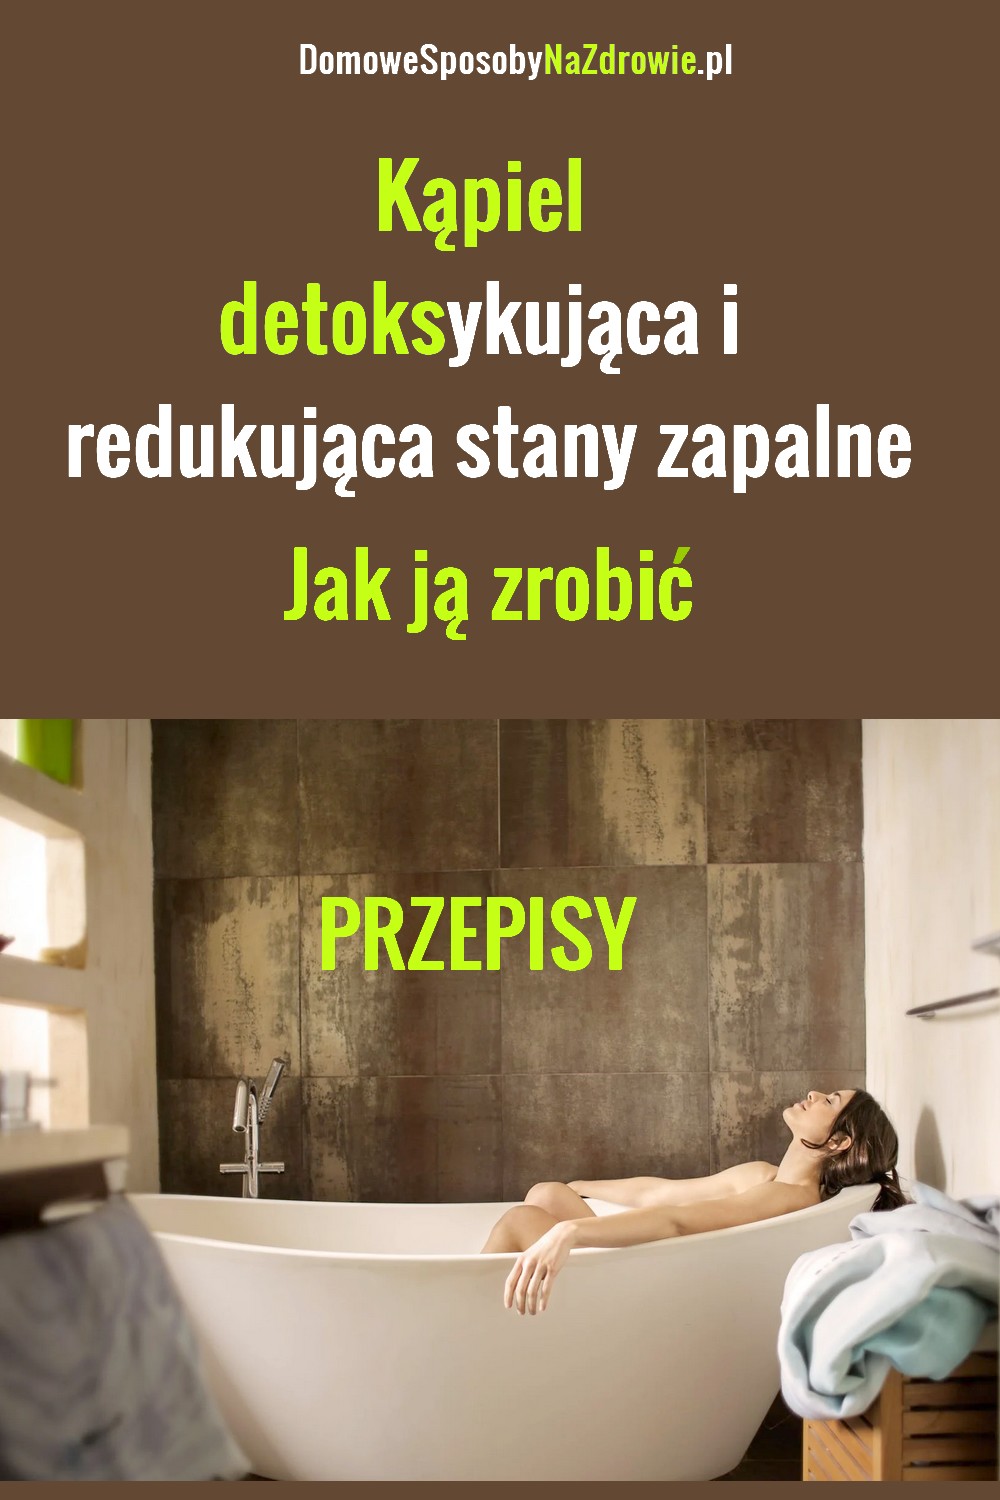 DomoweSposobyNaZdrowie.pl-kapiel-detoks-przepisy